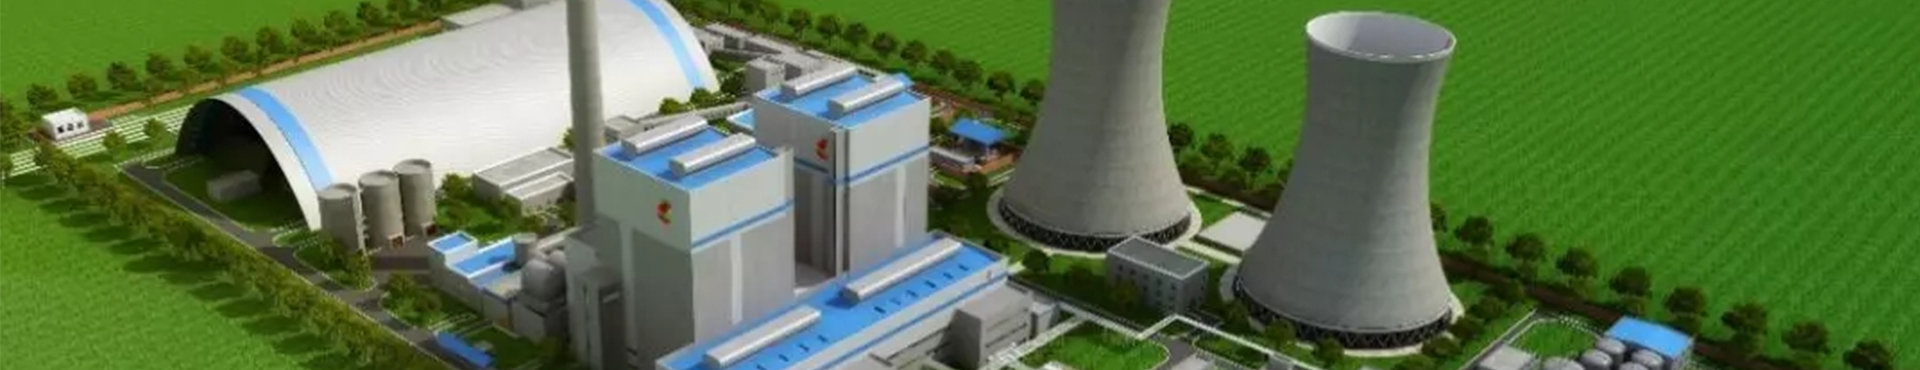 贵州清洁能源科研实训基地建设与虚拟仿真